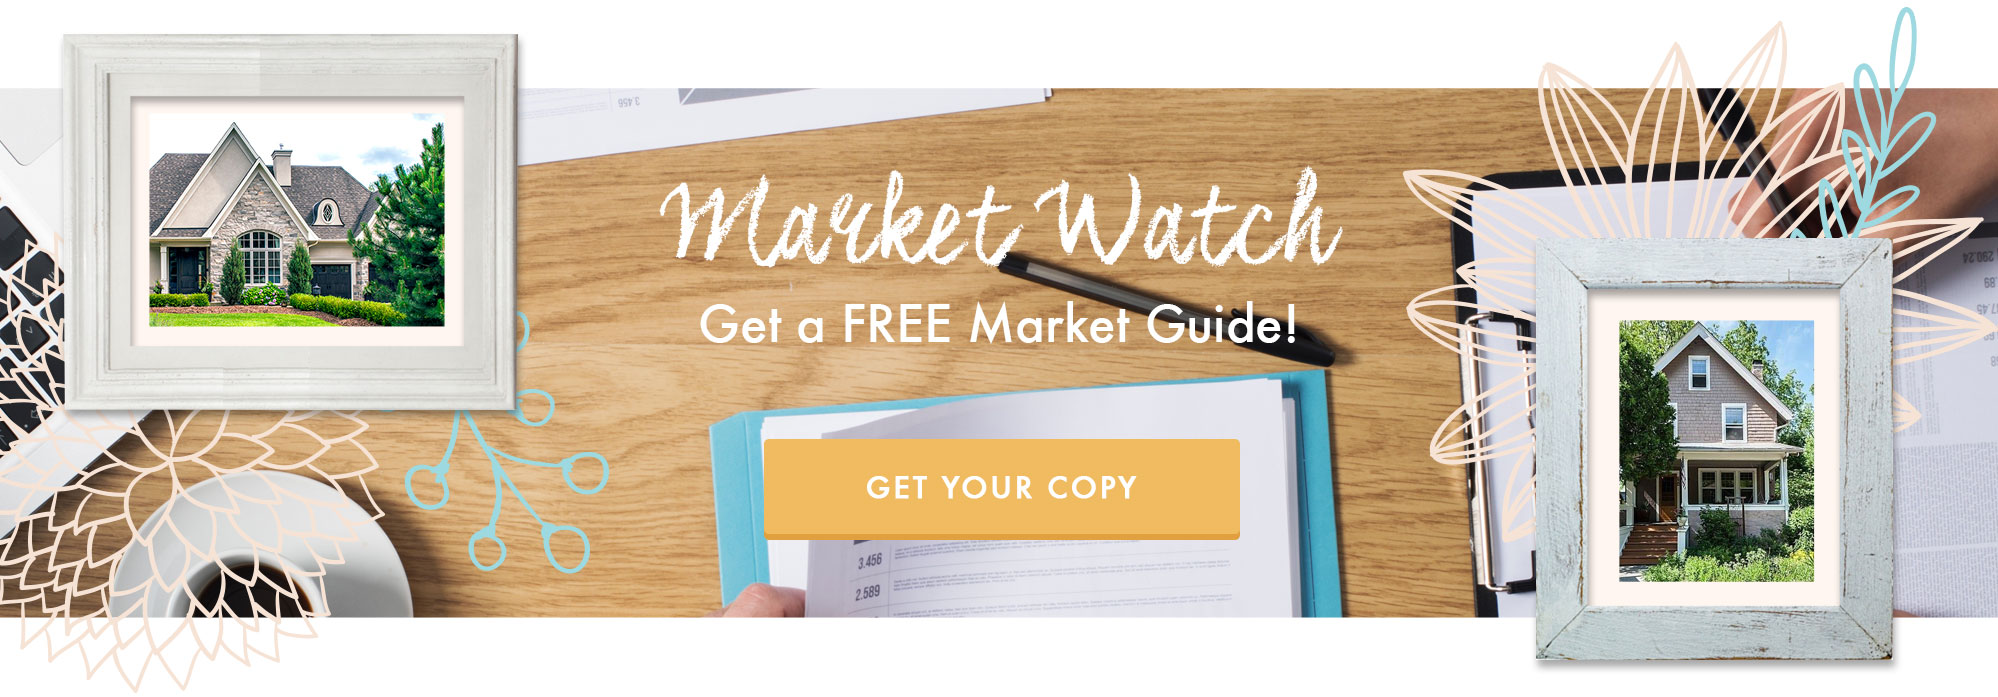 Market Watch - Get Housing Market Updates